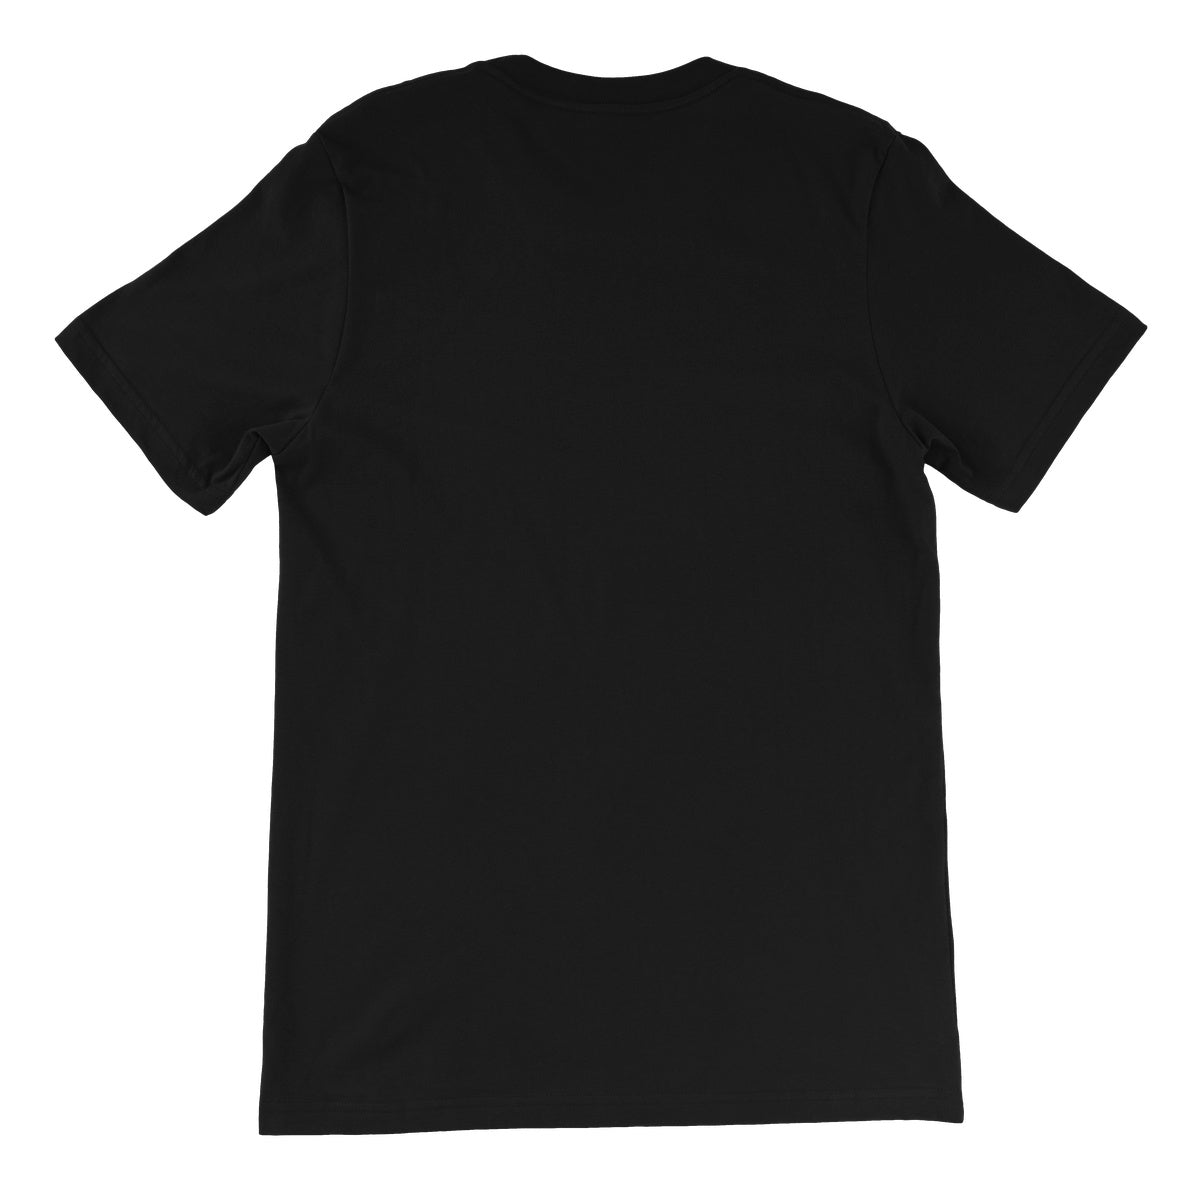 Five Cubes, Summer Unisex Short Sleeve T-Shirt